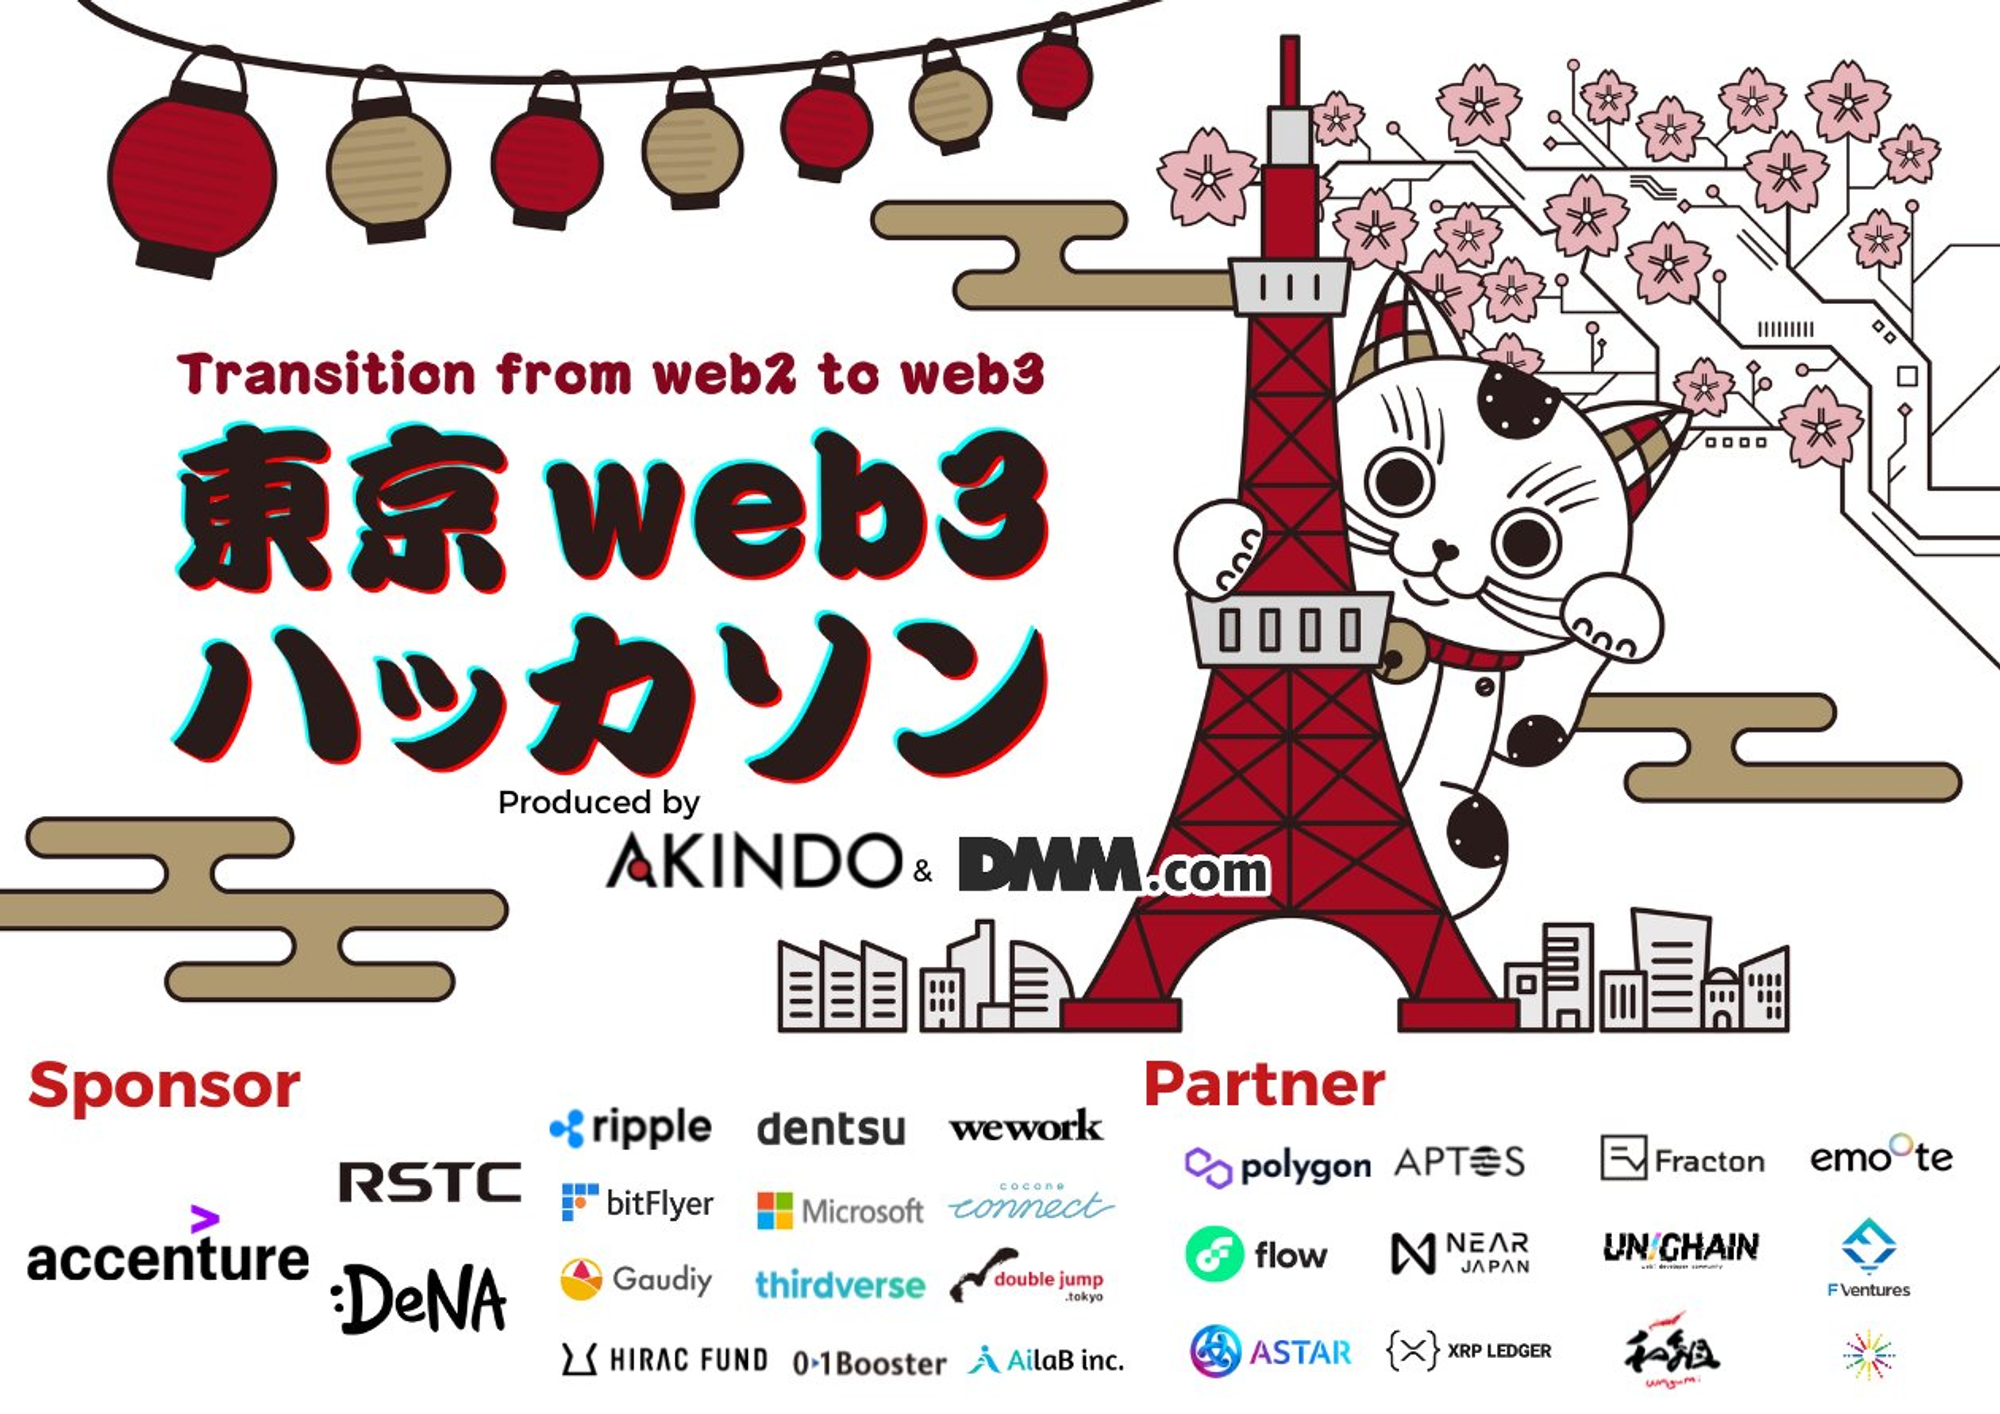 東京 Web3 Hackathon의 홍보 표지